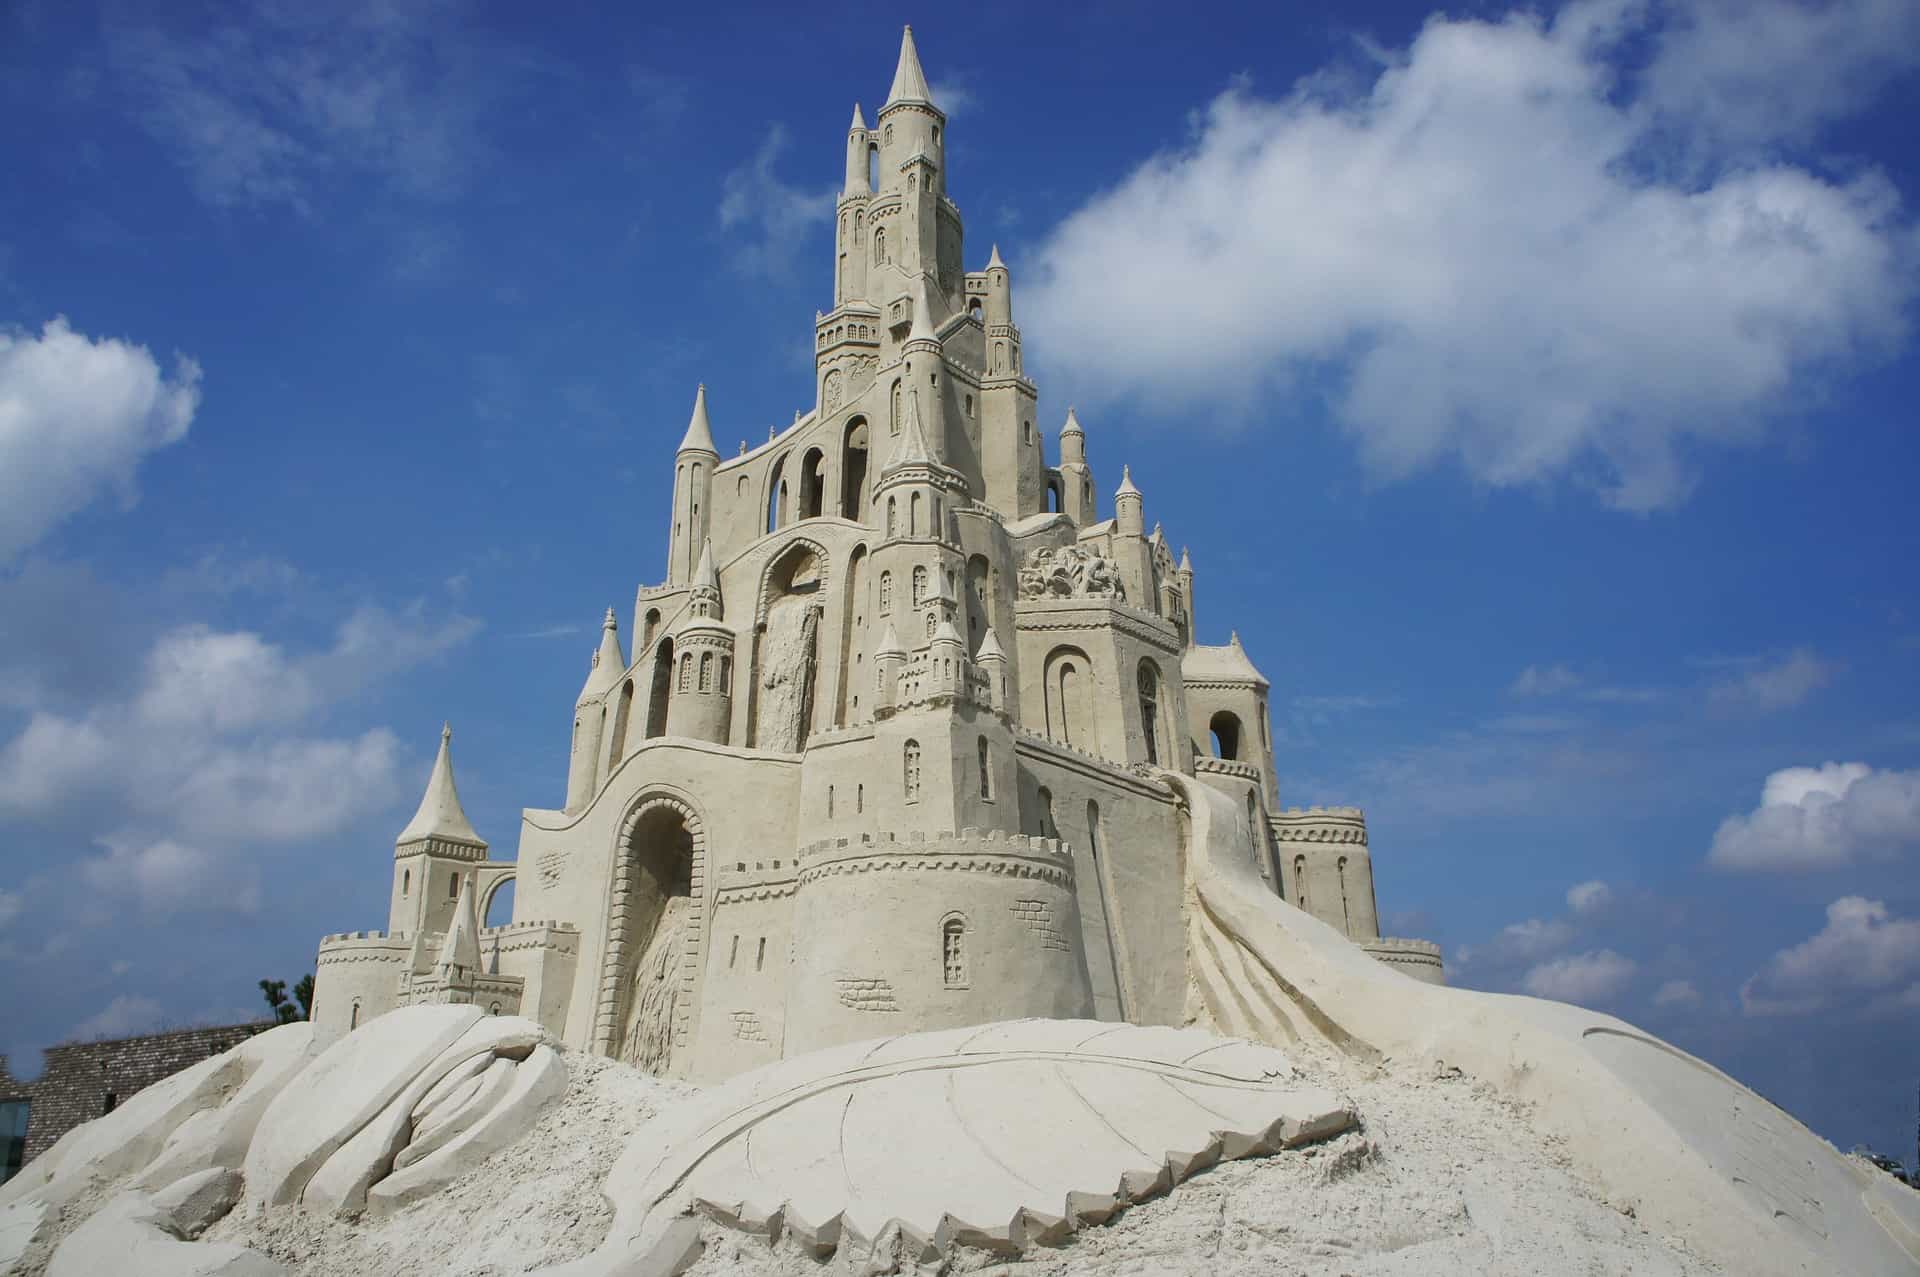 sand castle-413285_1920